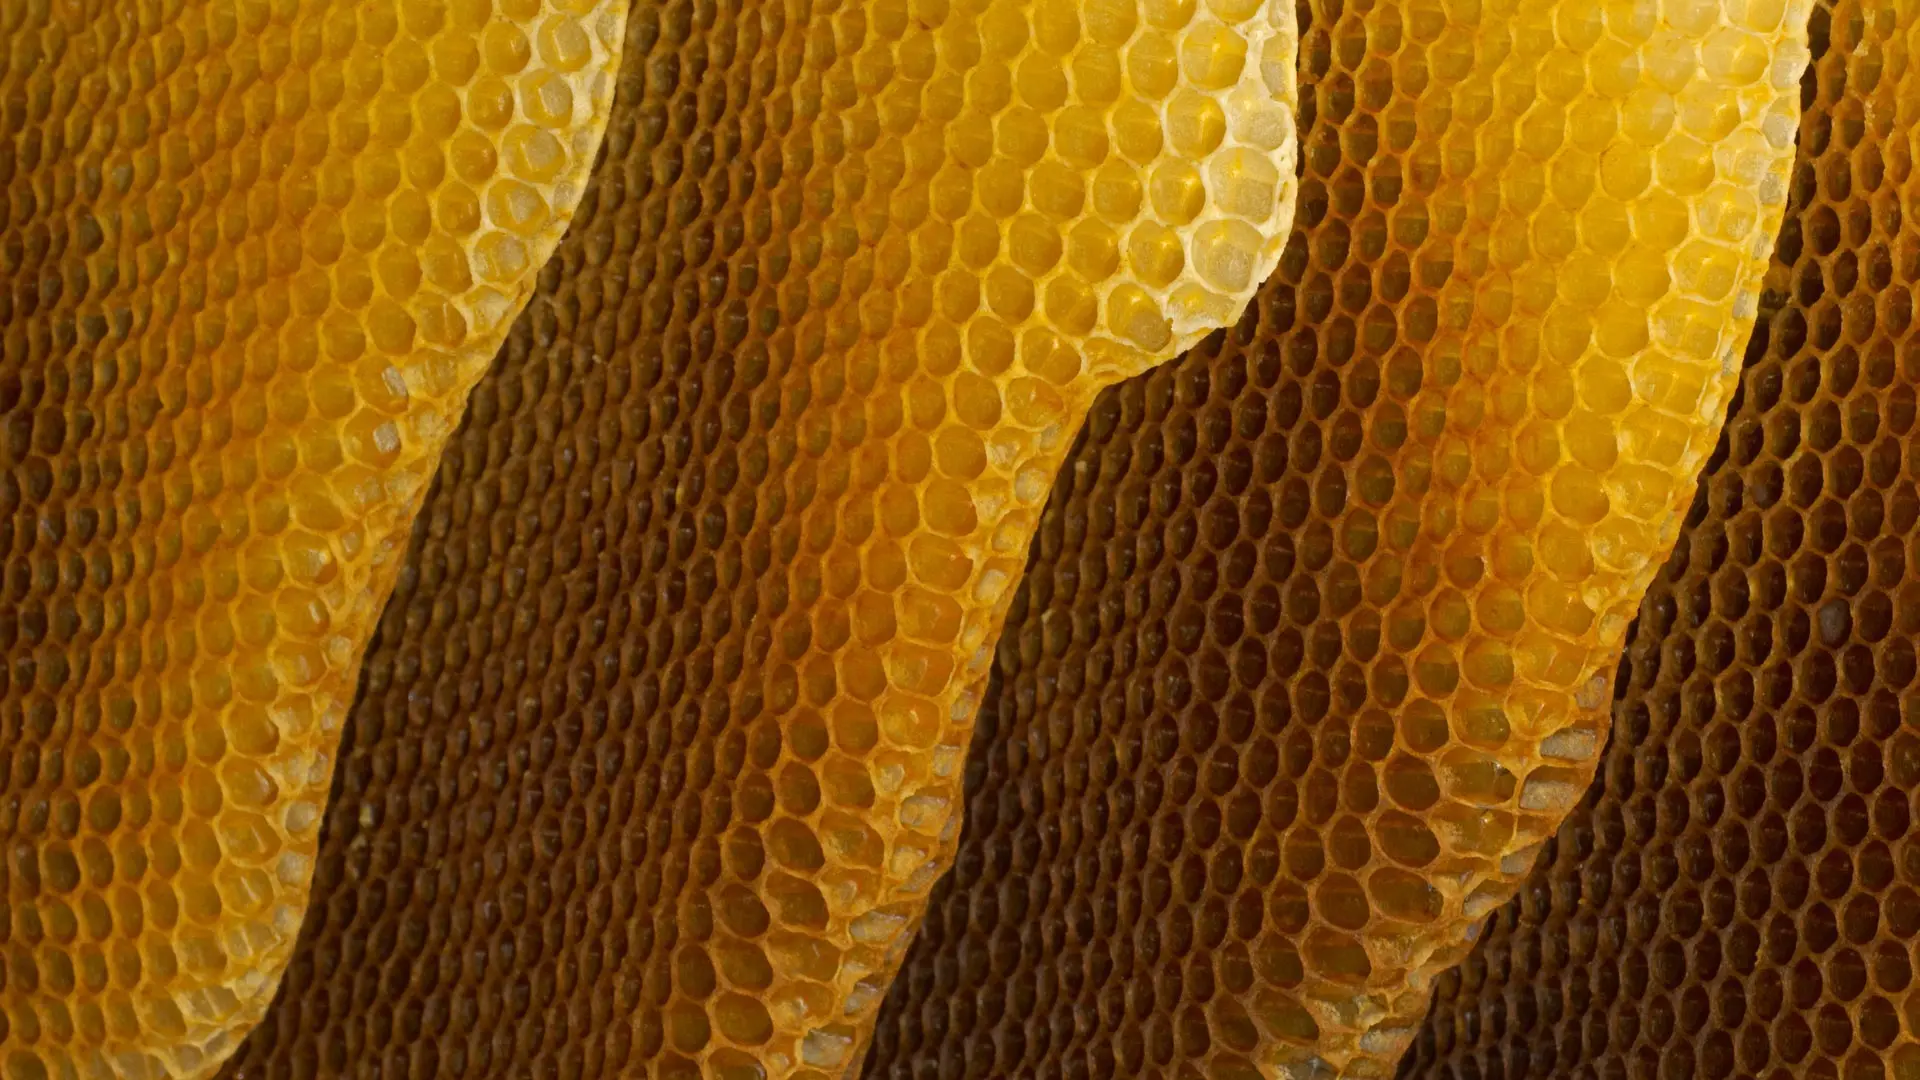 Honeycomb_EN-AU7568111738_1920x1080.png